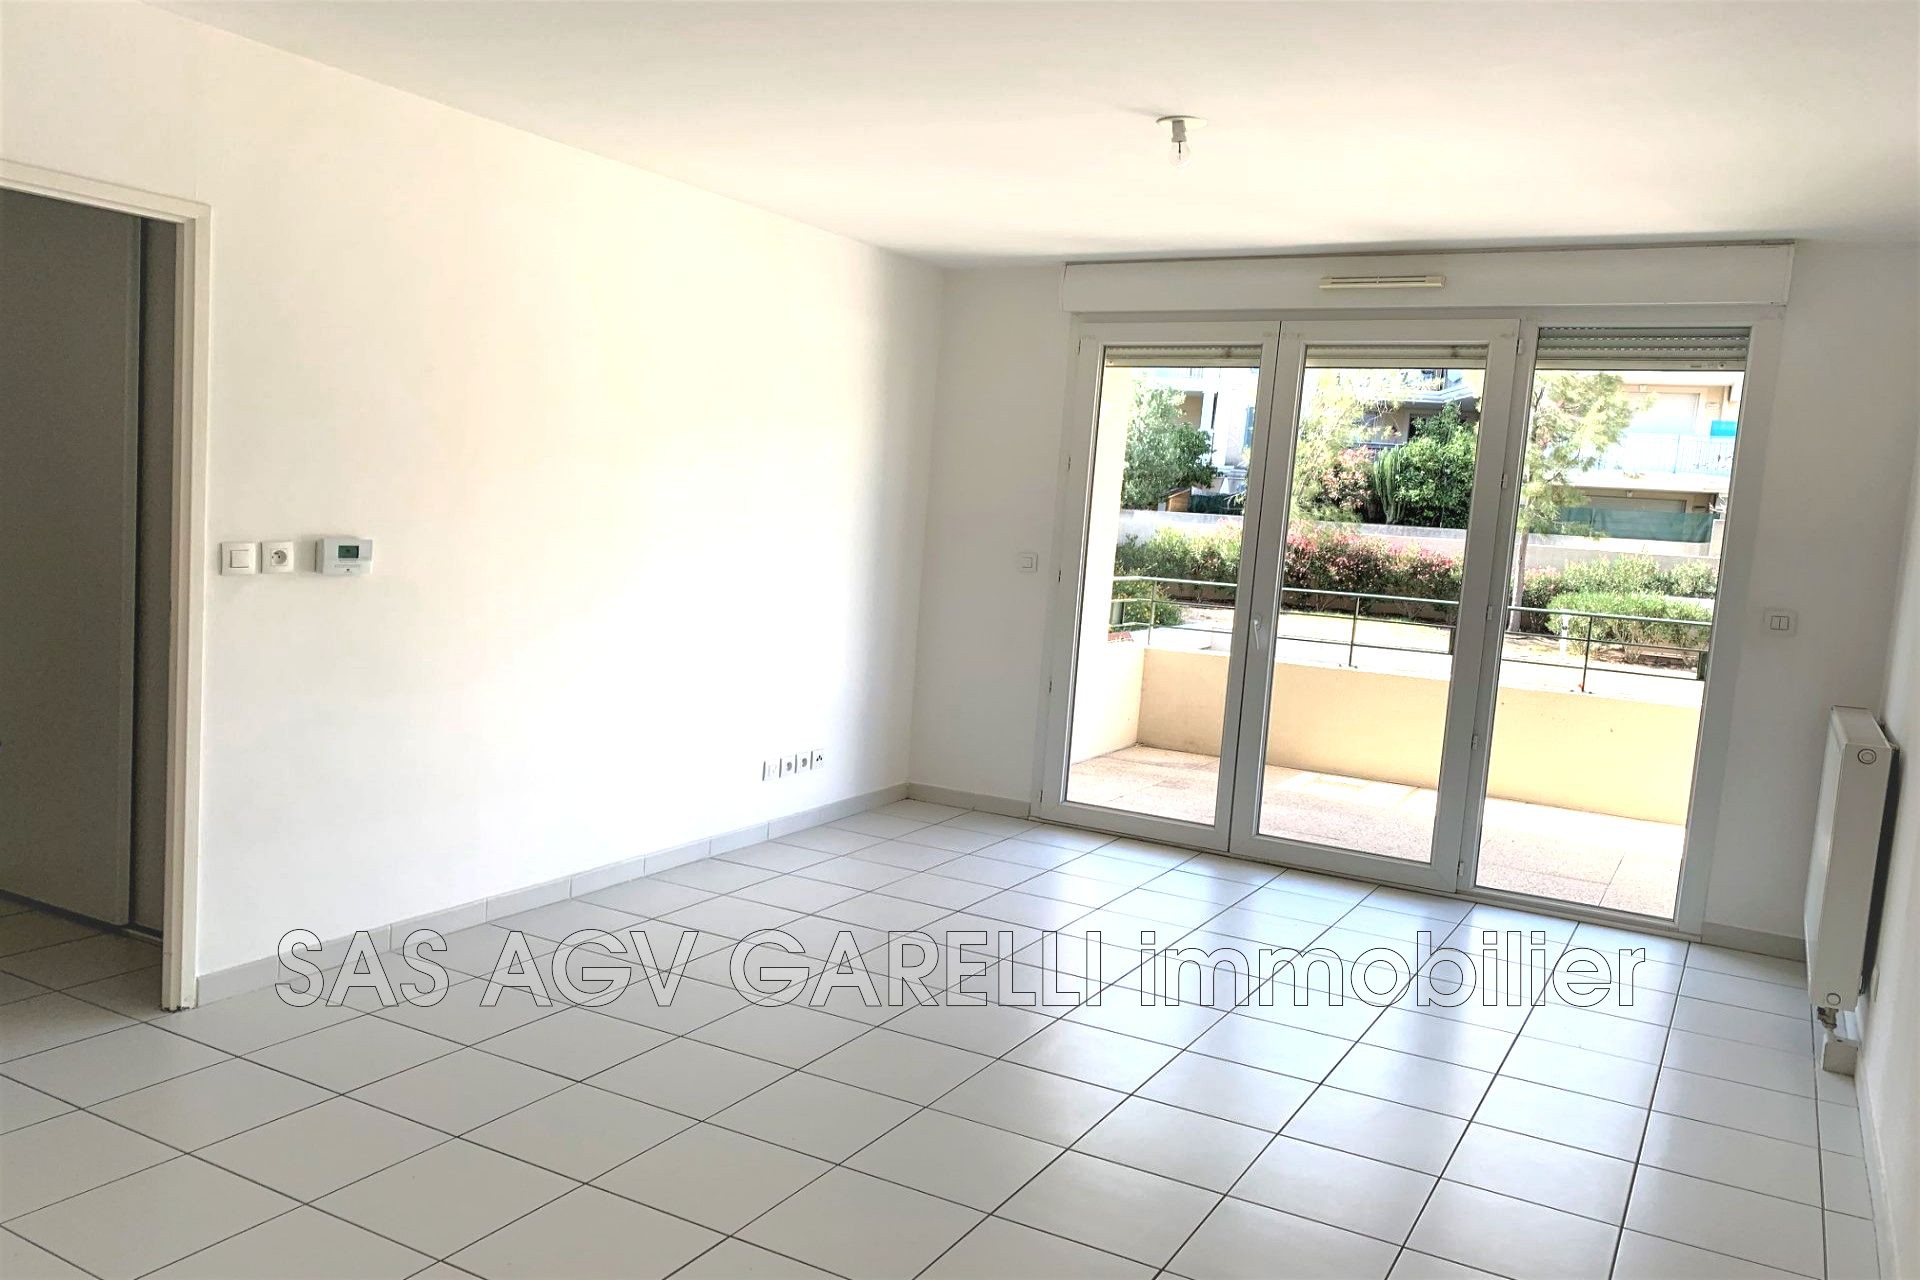 Vente Appartement 56m² 3 Pièces à Toulon (83000) - Agv Garelli Immobilier